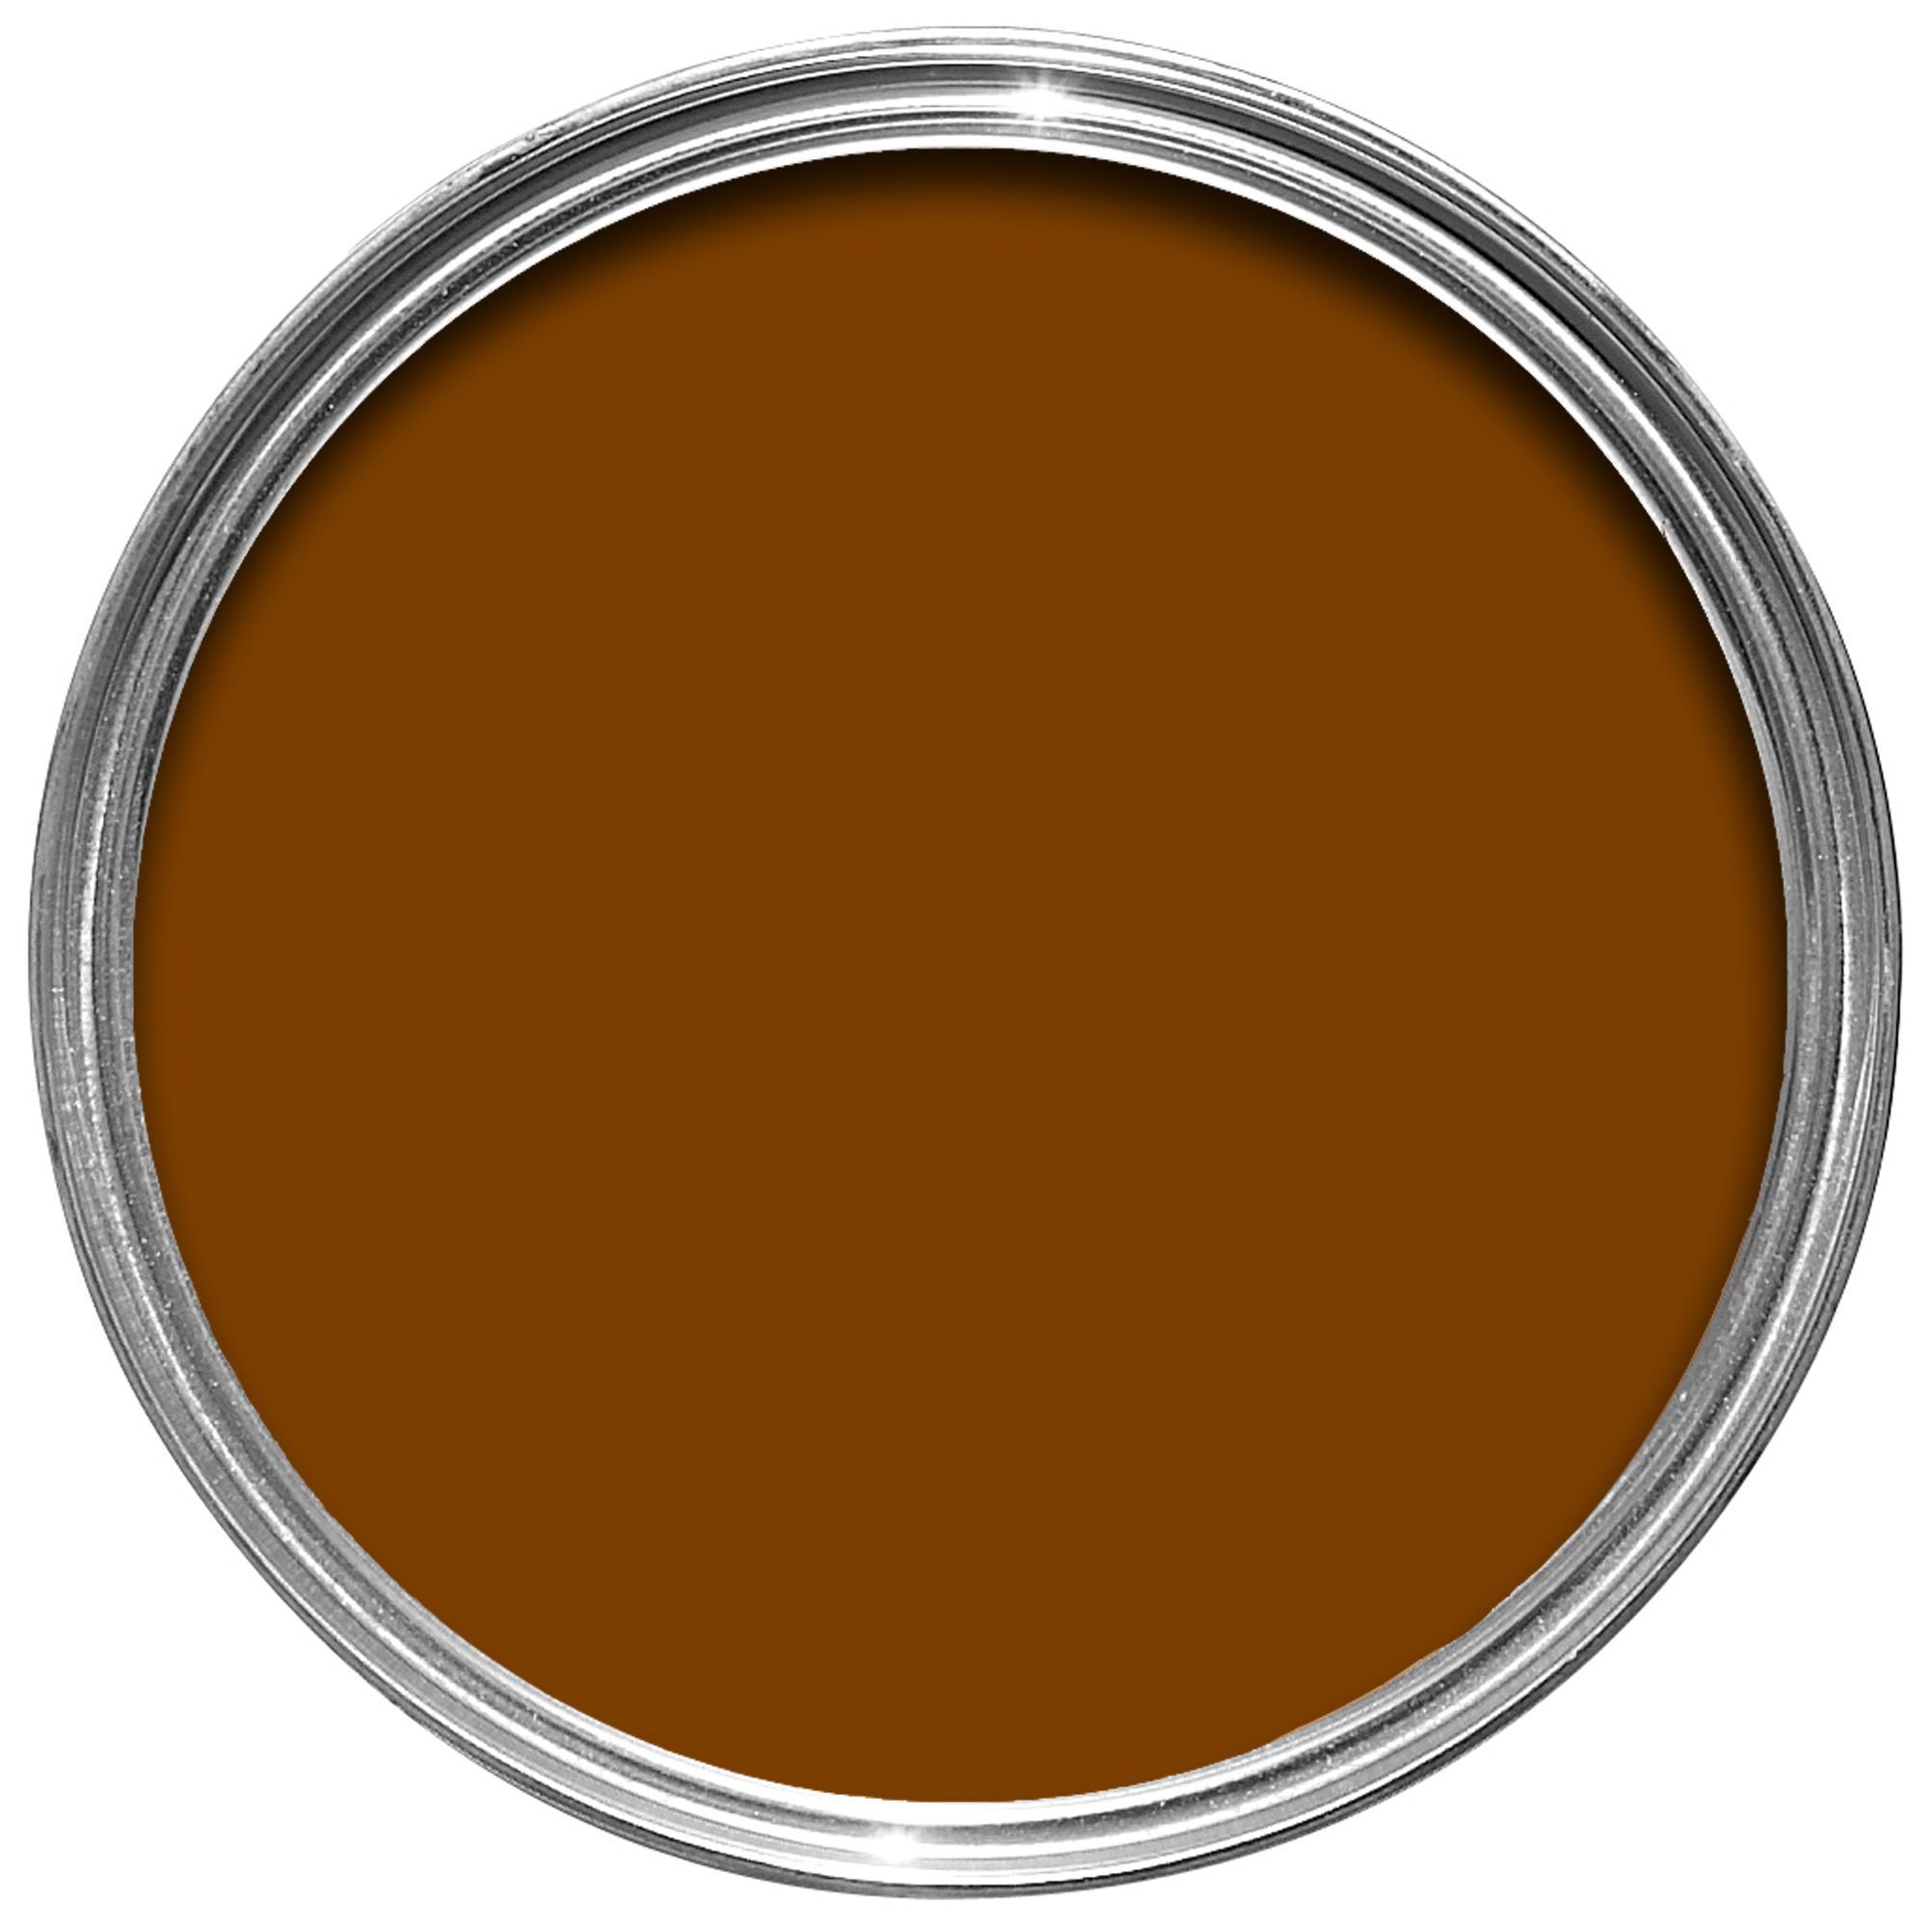 Rust-Oleum Painter's touch Bronze effect Multi-surface paint, 20ml